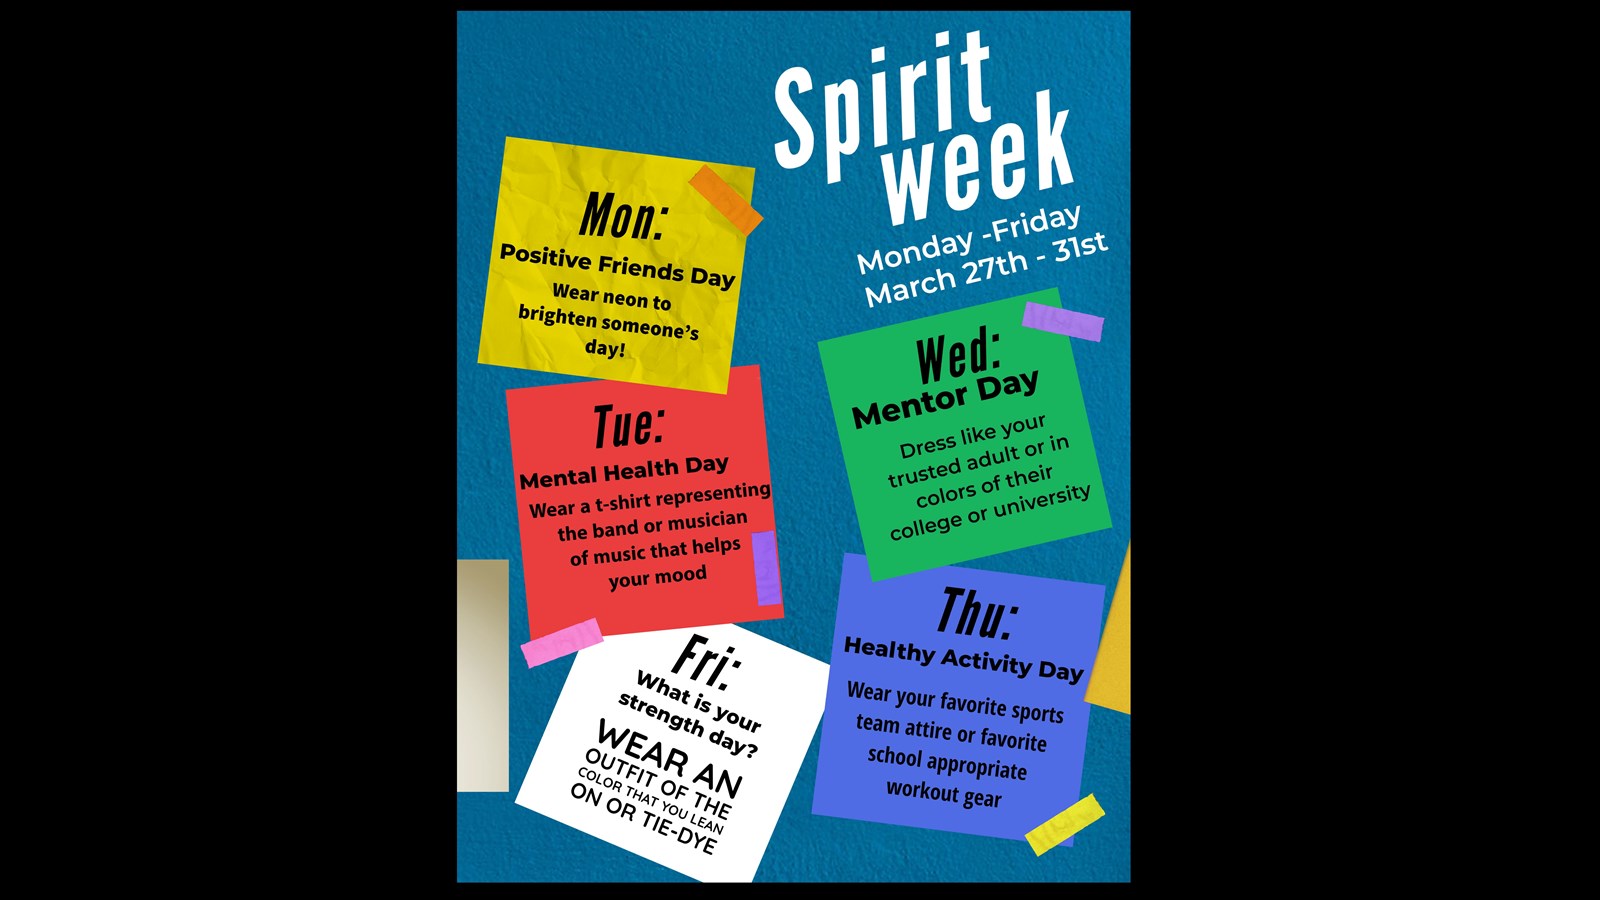 Spirit week flyer